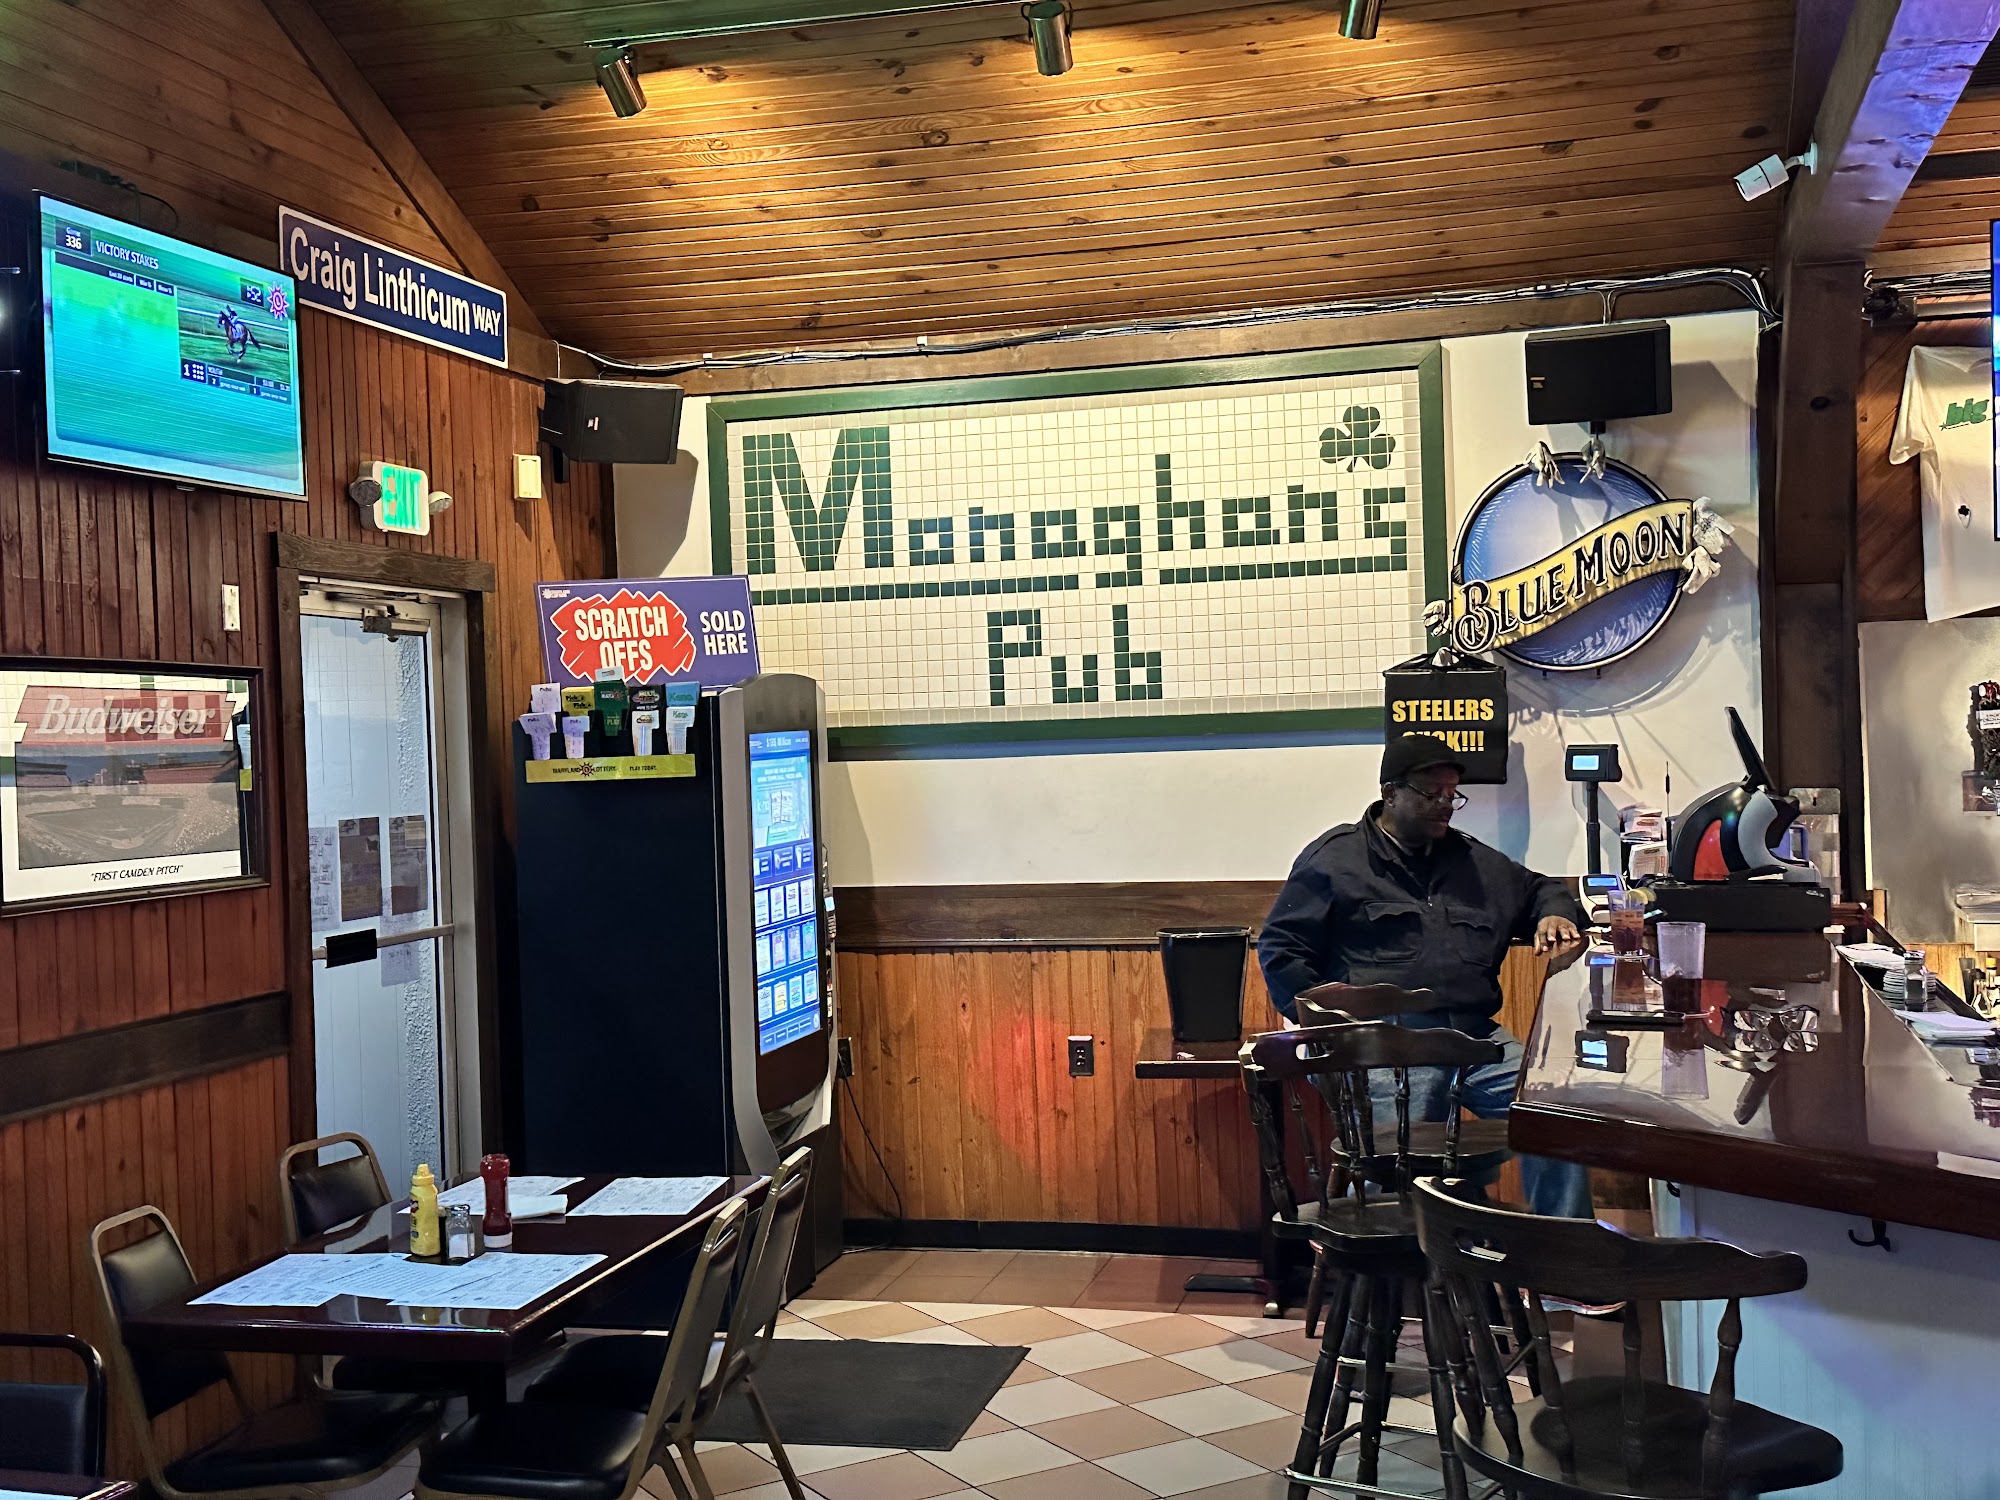 Monaghan's Pub